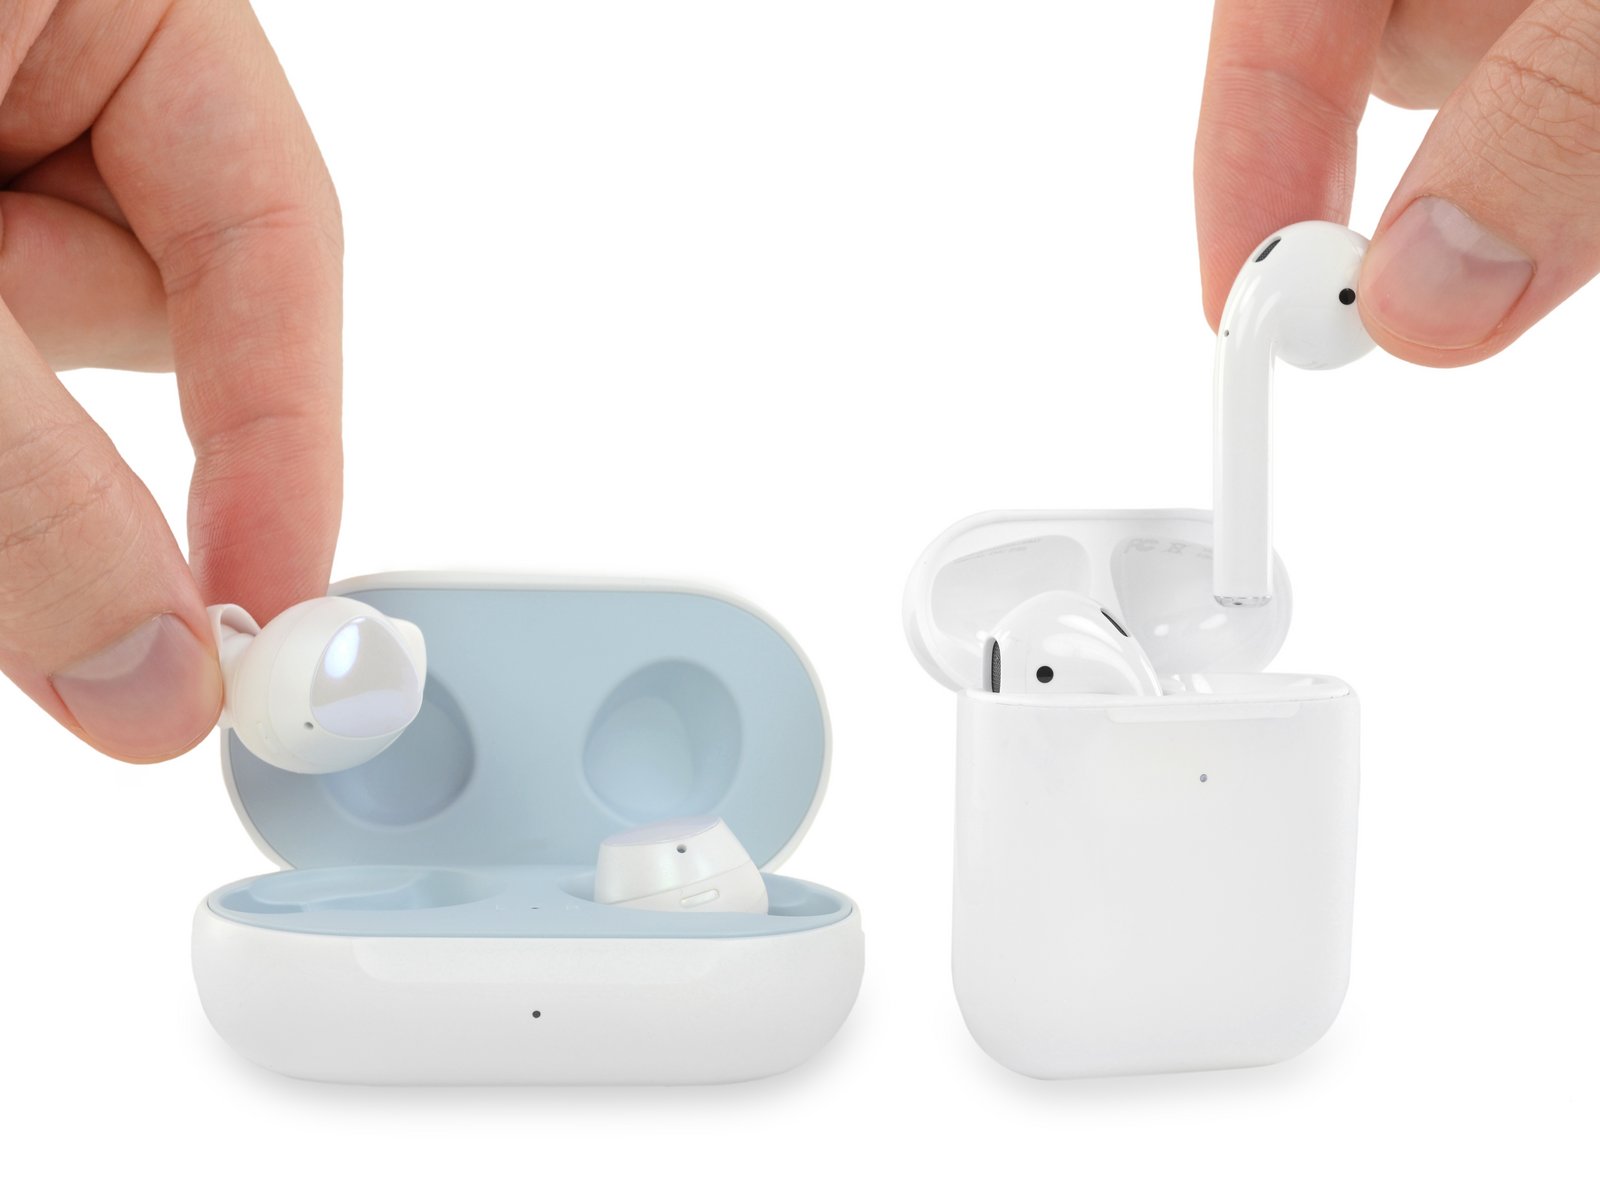 Nowe Apple AirPods także „jednorazowe”: Słuchawki nie mogą być naprawione